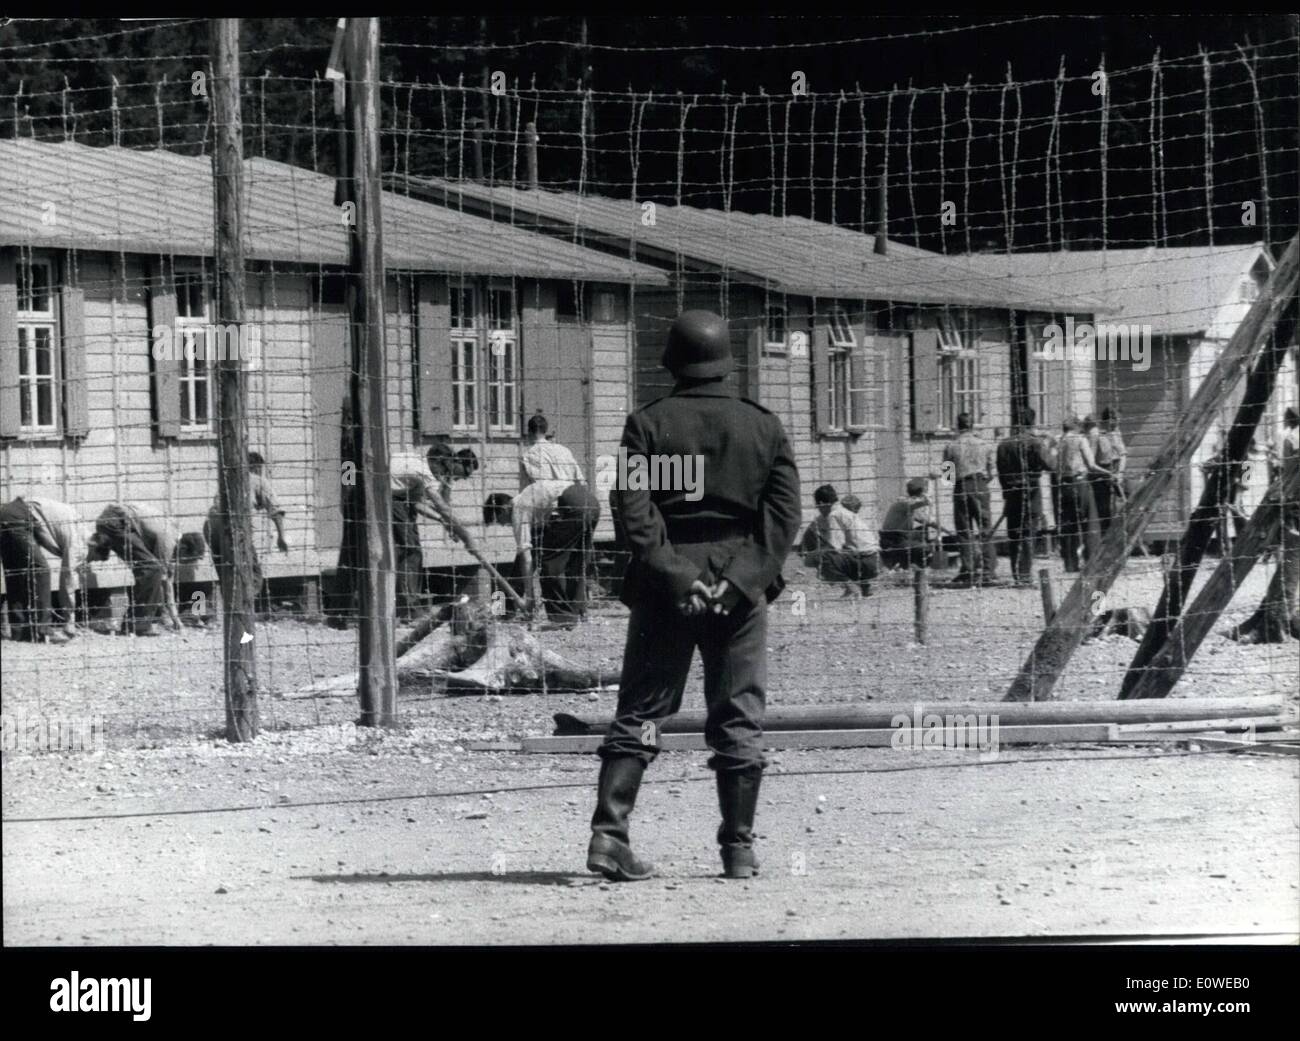 7. Juli 1962 - '' The Great Escape'': Während Zweiter Weltkrieg, 76 Alliierten gelang es, um aus Gefangenen Lager Stalag Luft III zu entkommen, das gesagt wurde, "Flucht-Beweis '' von Kriegsgefangenen. 50 Flüchtlinge wurden entdeckt und hingerichtet. Zwei fanden ihren Weg in die Freiheit (sie erreichte Schweden). Die Reamaining wurden ins Gefängnis wieder aufgenommen. Diese größte Massenflucht von alliierten Kriegsgefangenen wird jetzt in einem Film von John Sturges in München-Geiselgasteig für eine amerikanische Filmproduktion gemacht. Für den Film wurde die Lager Stalag Luft III entsprechend dem Original rekonstruiert Stockfoto